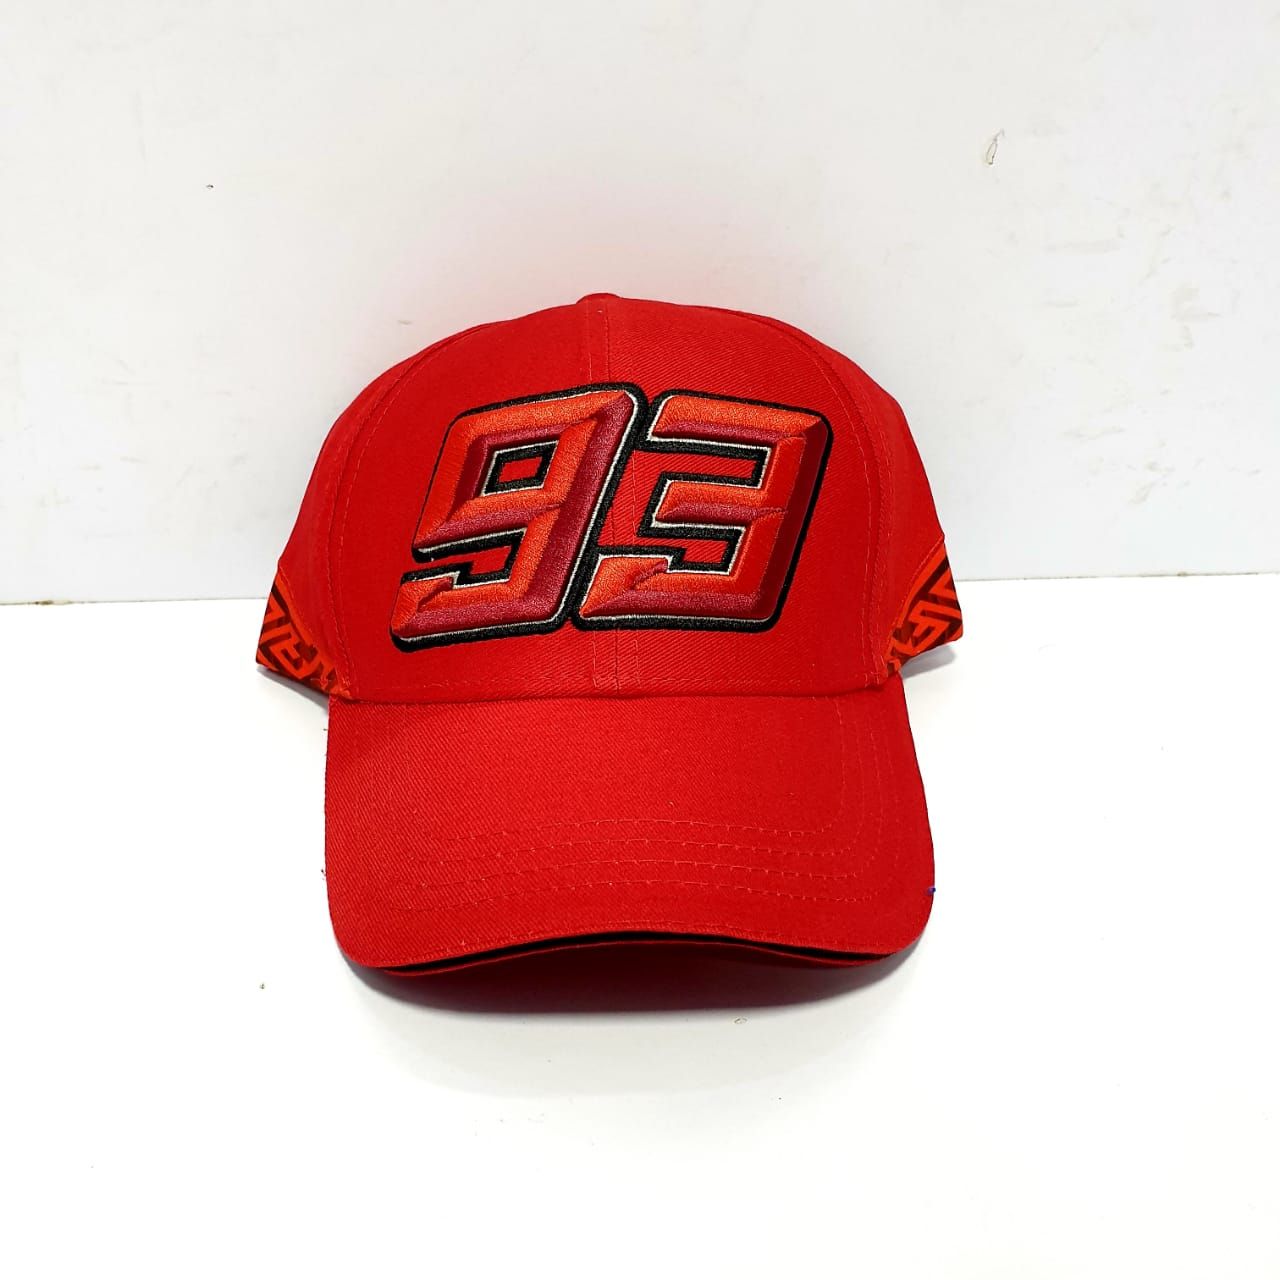 93 Full Red Cap